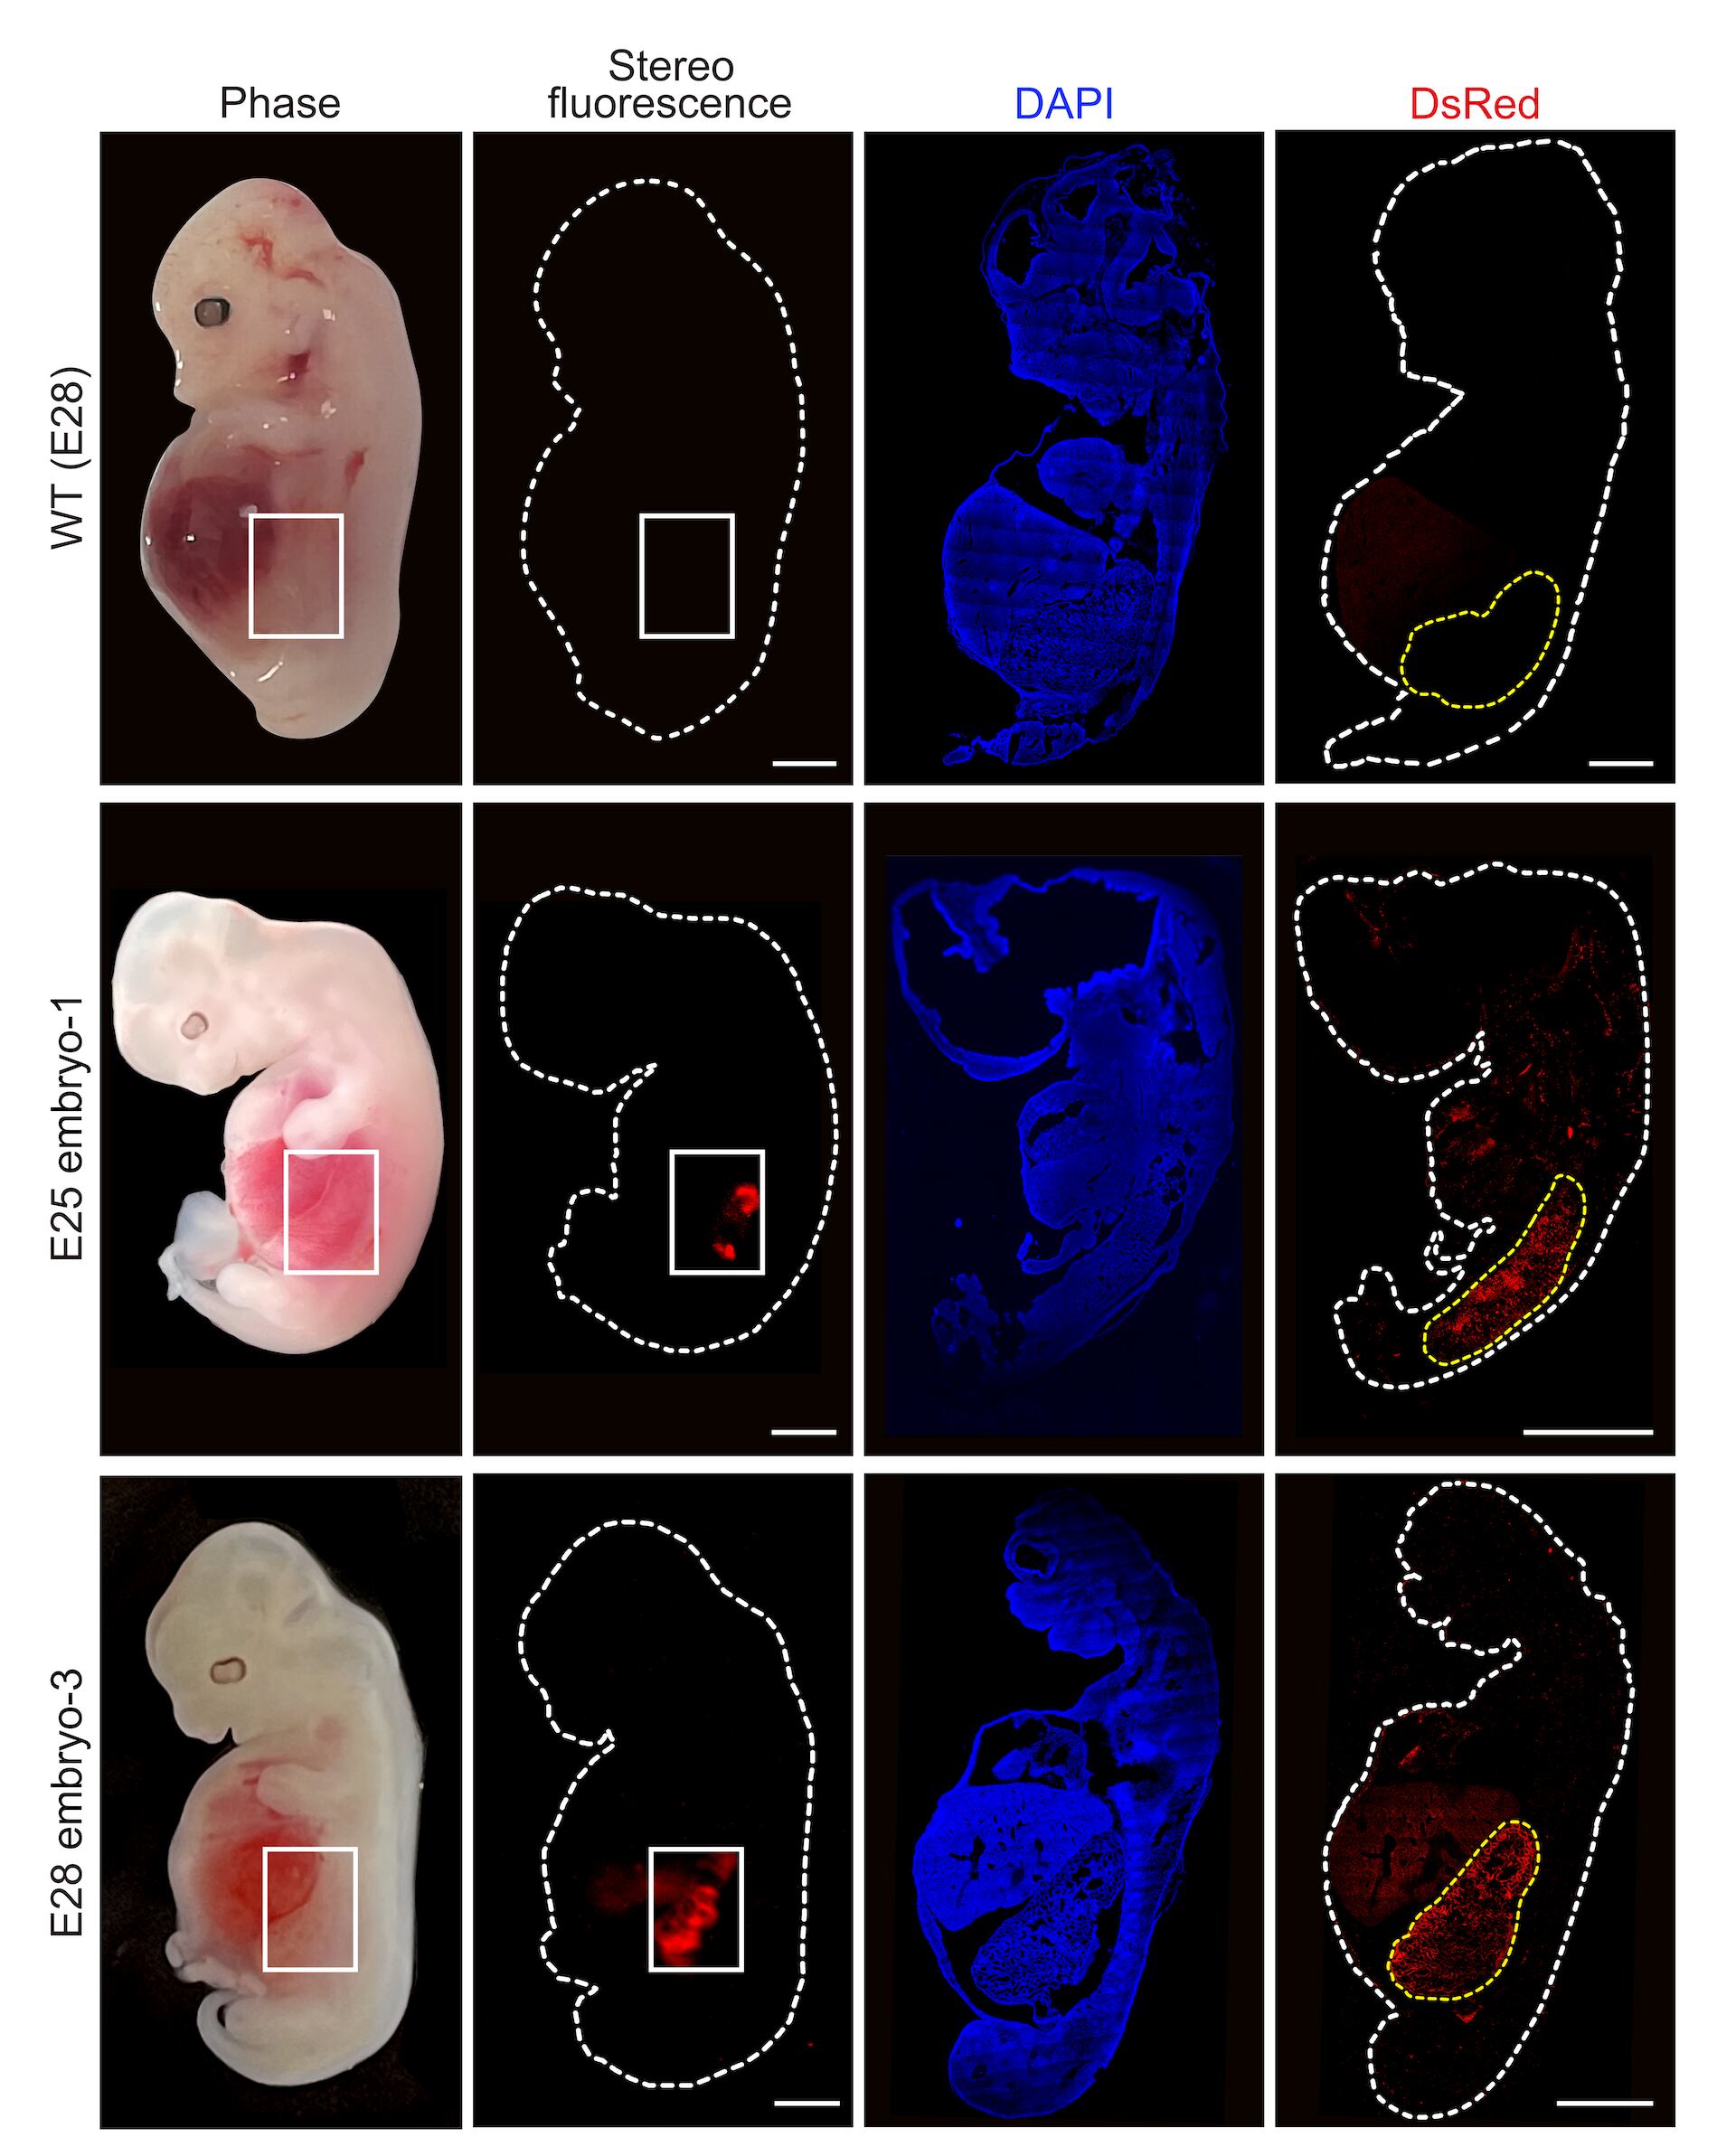 Esta figura mustra células renales humanizadas (que aparecen en color rojos florescente) dentro de un embrión comparadas con un embrión de cerdo.